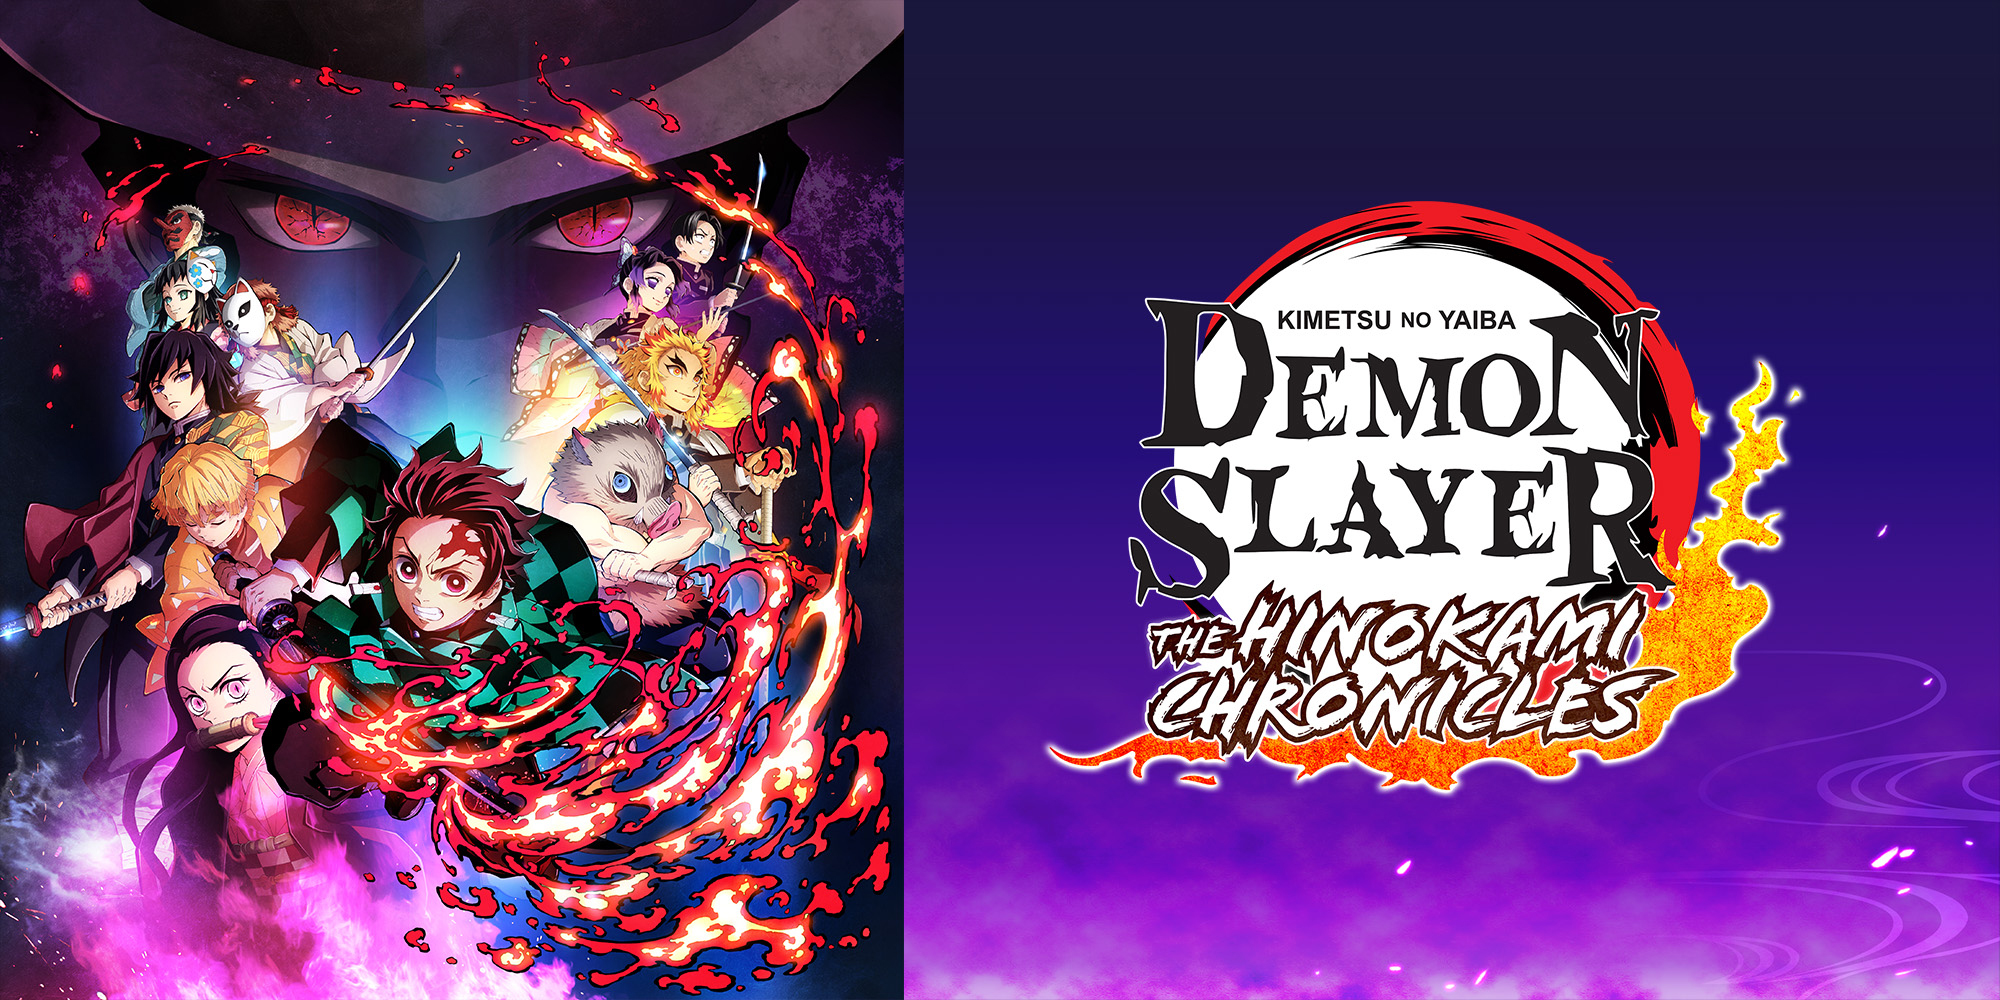 Crie seu próprio personagem de Demon Slayer no site oficial da